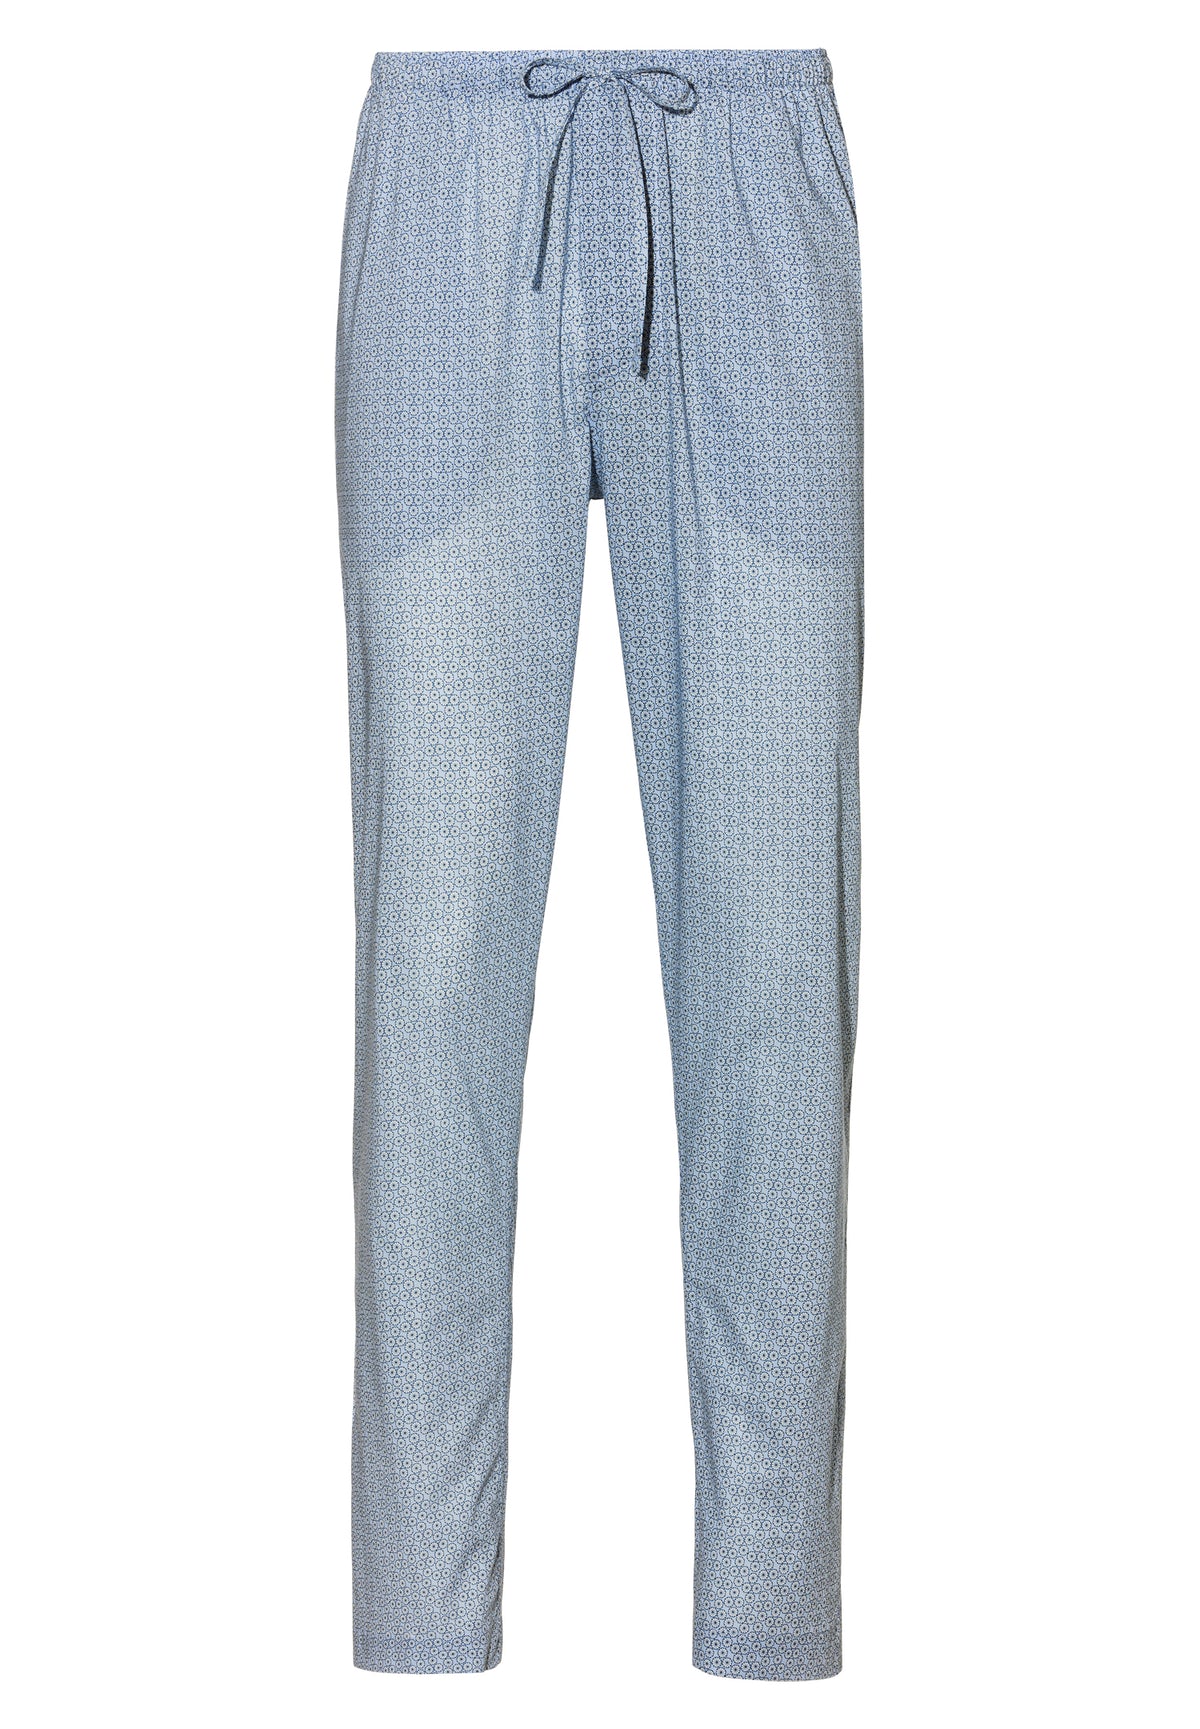 Cotton Voile Print | Pants Long - ditsy-geo light blue